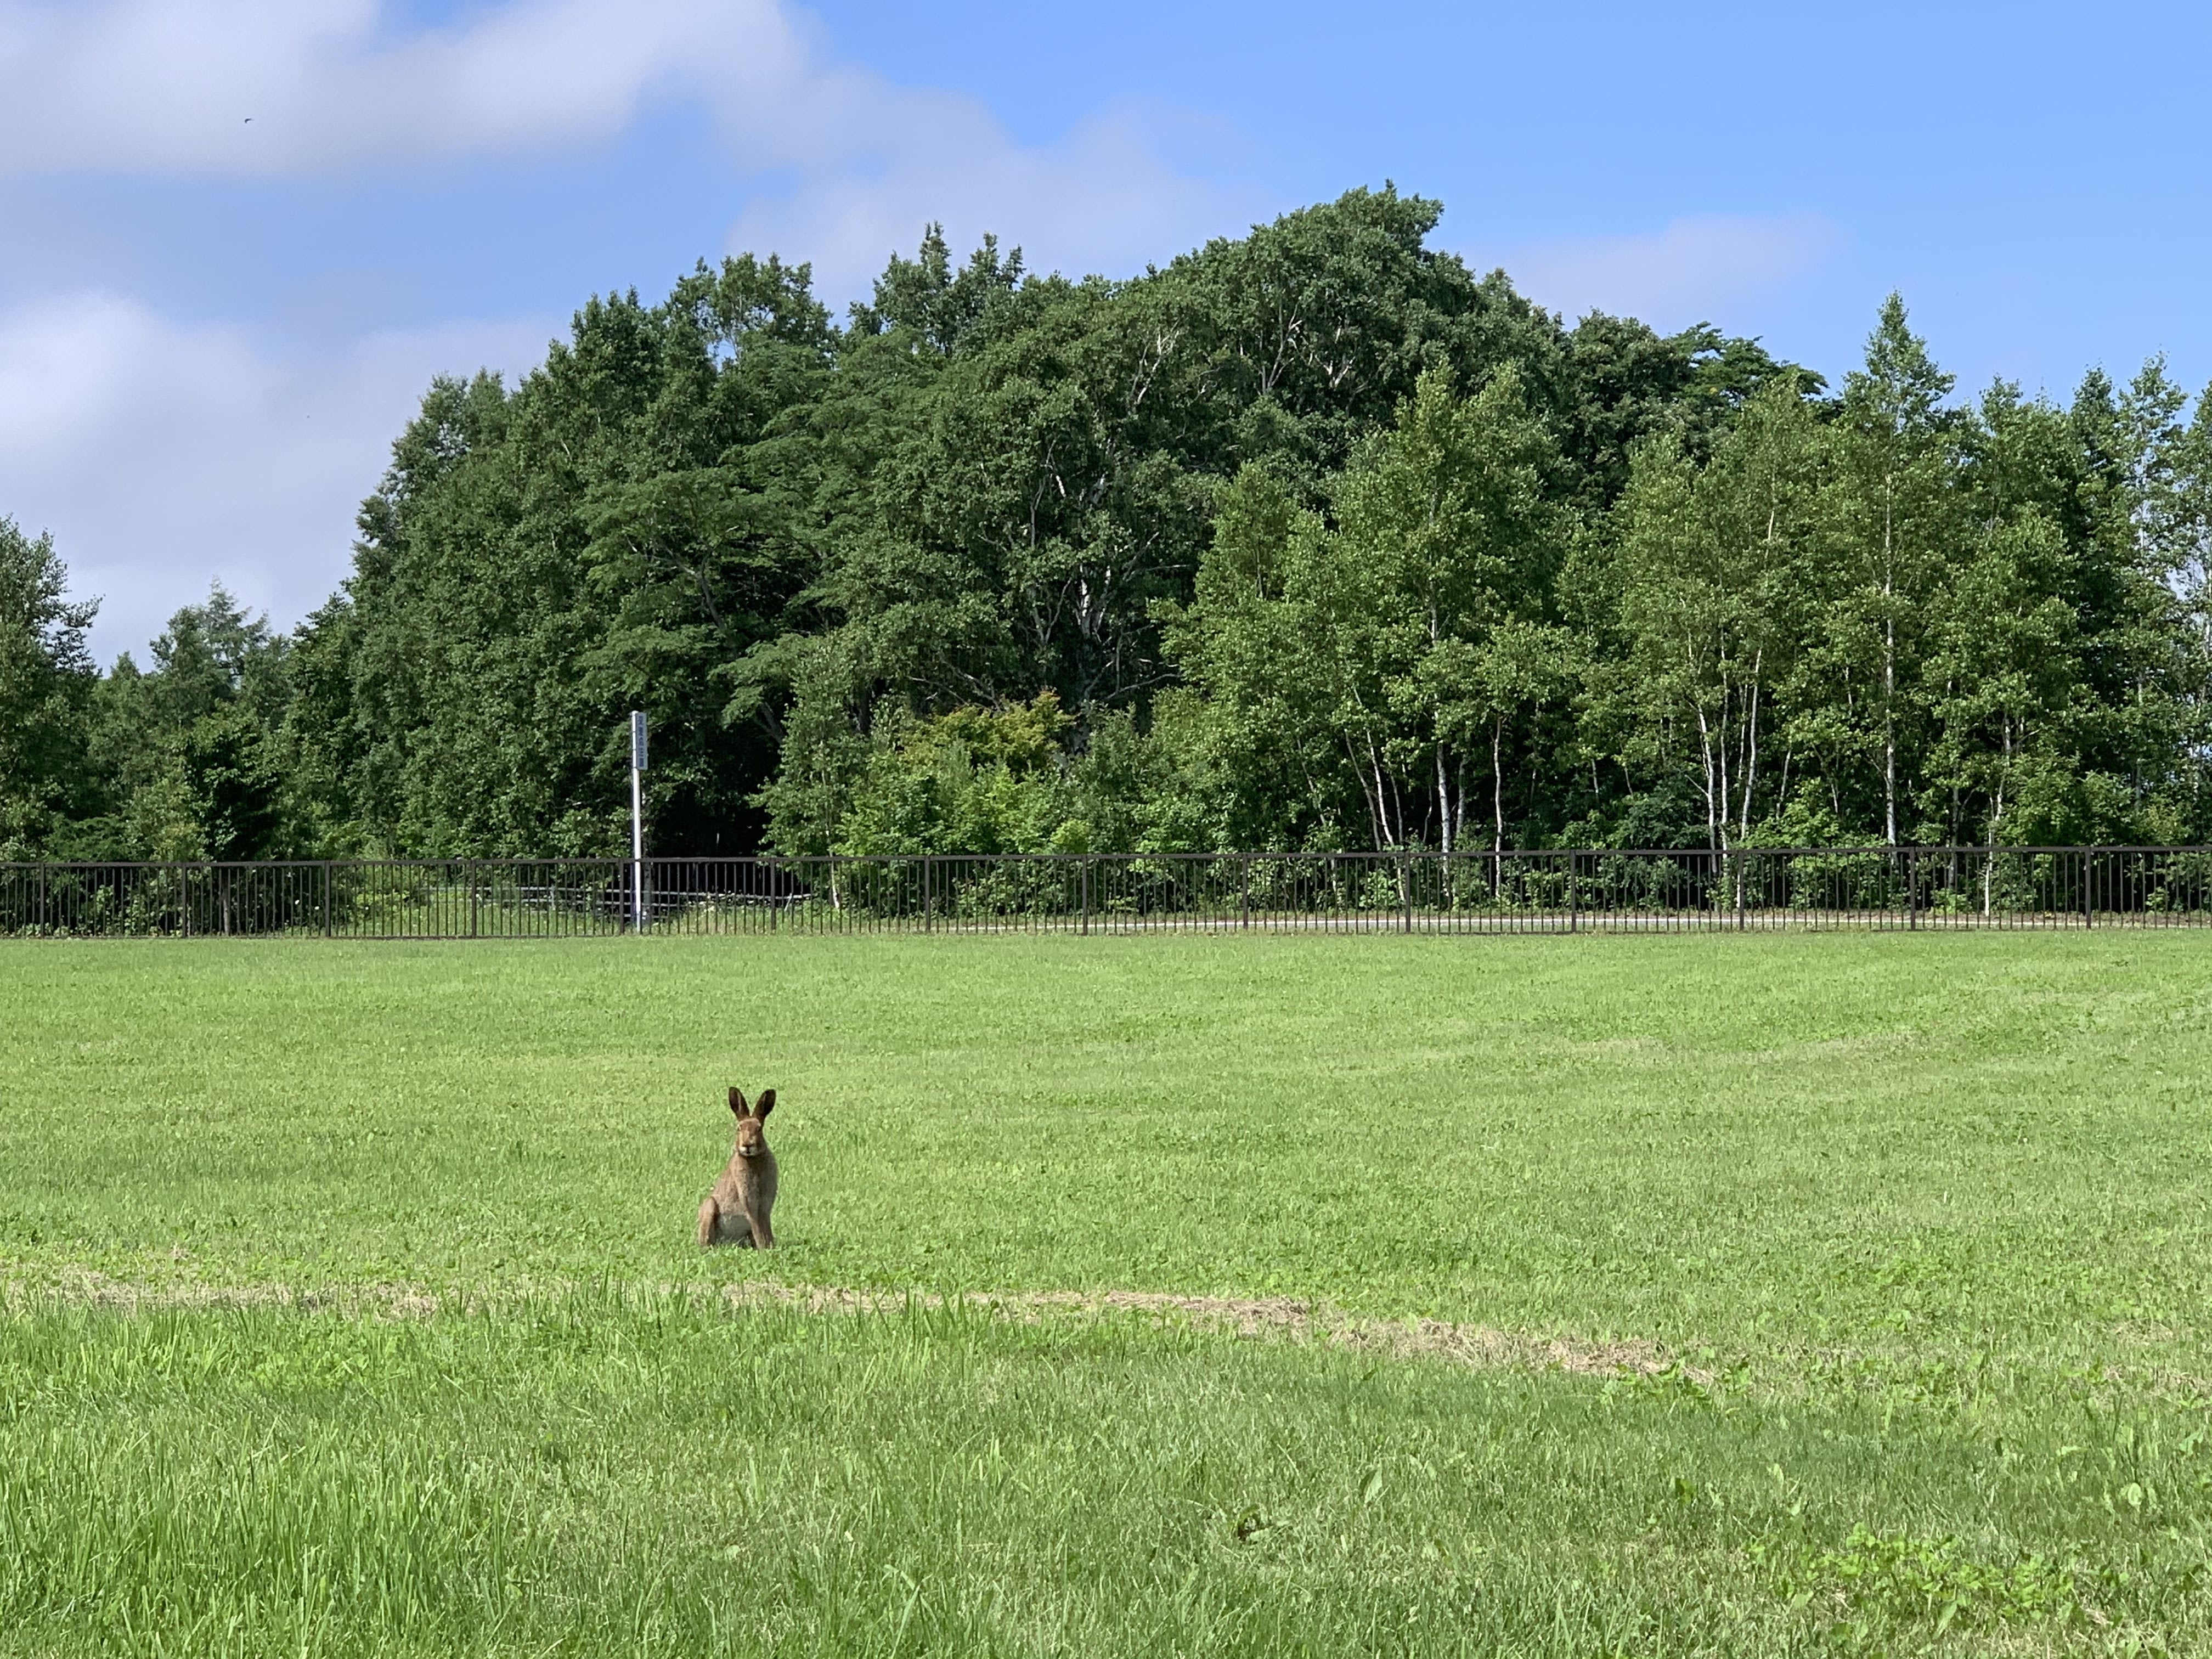 A lone rabbit on alert in a green field.